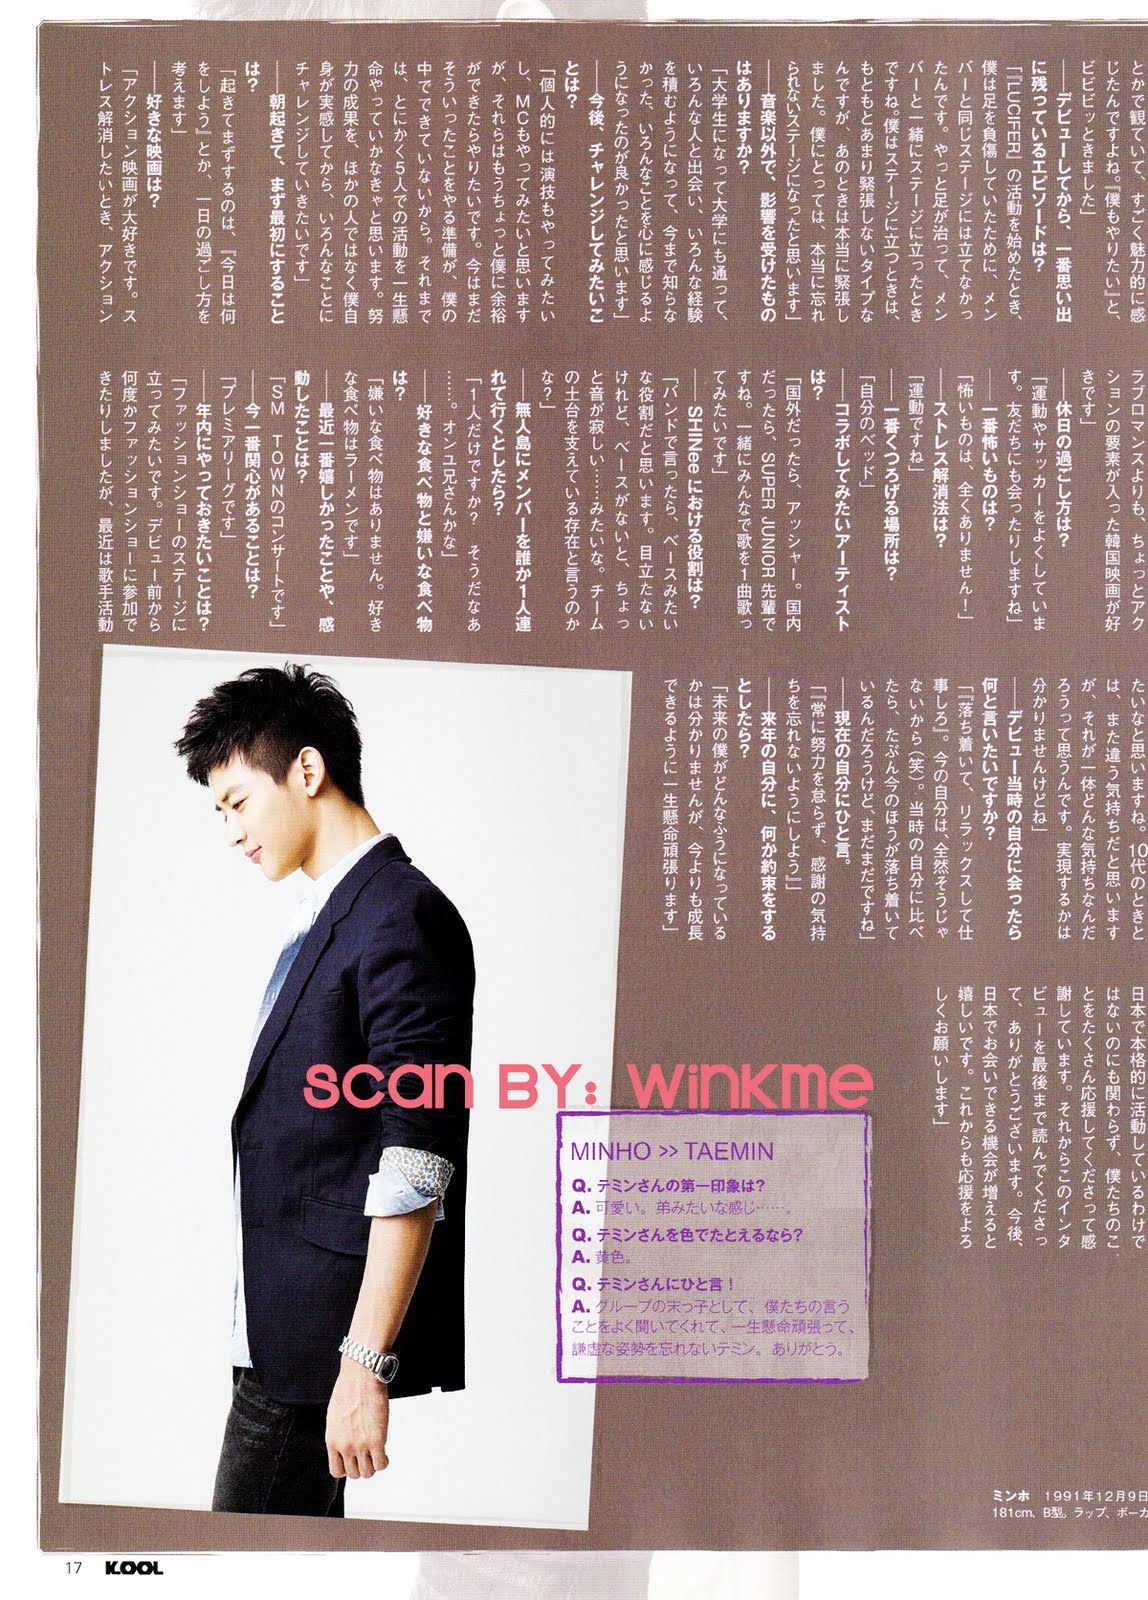 [12.11.10][News] Bài phỏng vấn SHINee trên tạp chí KOOL ( 2MIN, JONG) Minho%2B02